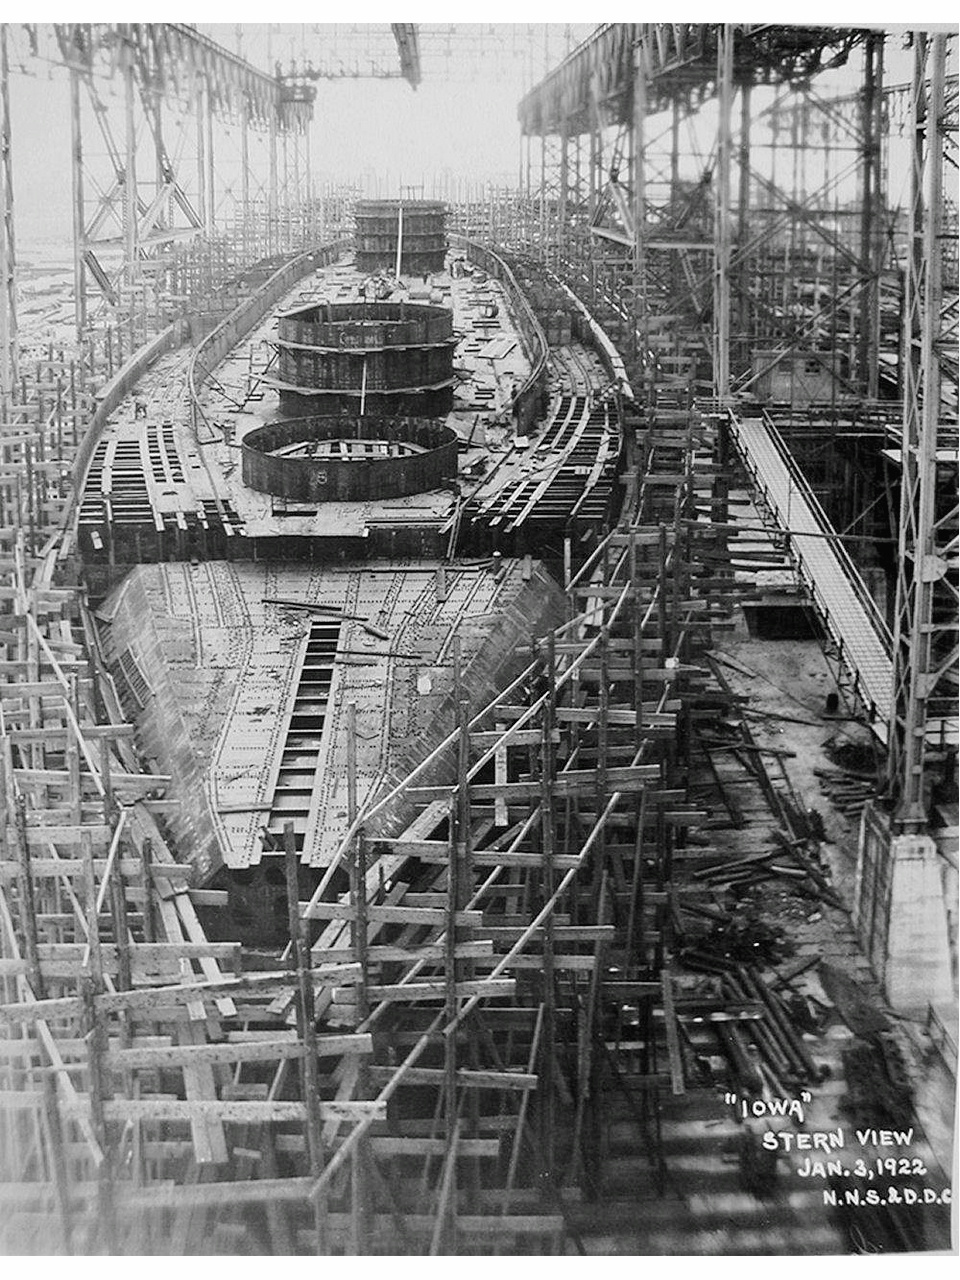 愛荷華號戰列艦建造中